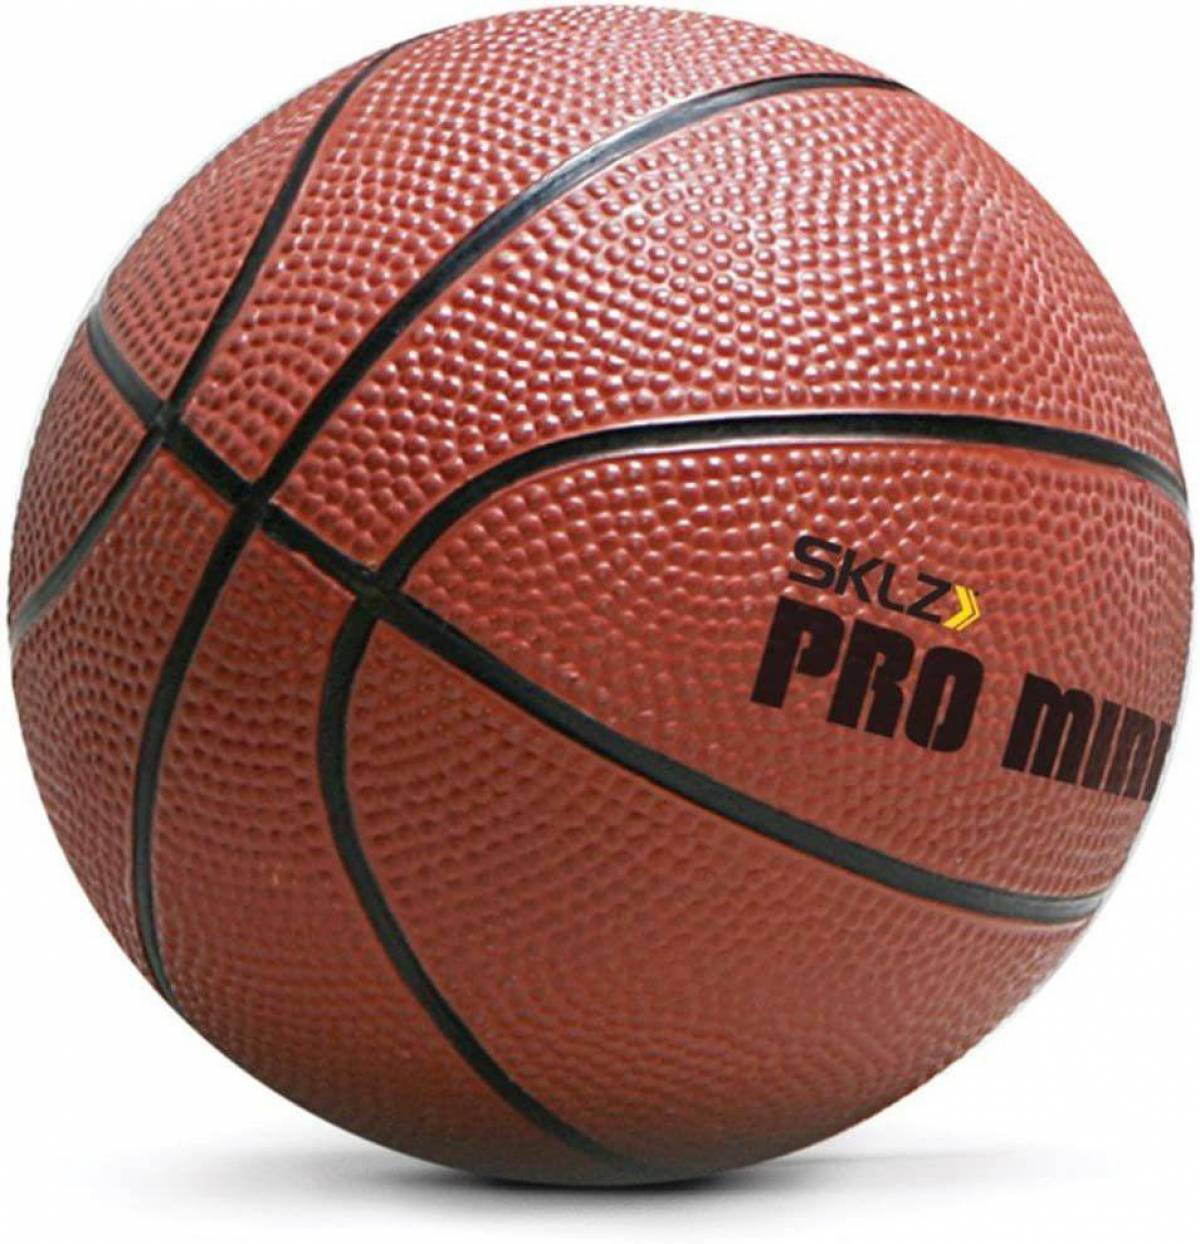 Спортивный мяч в баскетболе. Баскетбольный мяч lel Pro b200. Nice shoot мяч баскетбольный. Баскетбольный мяч Melton 365.